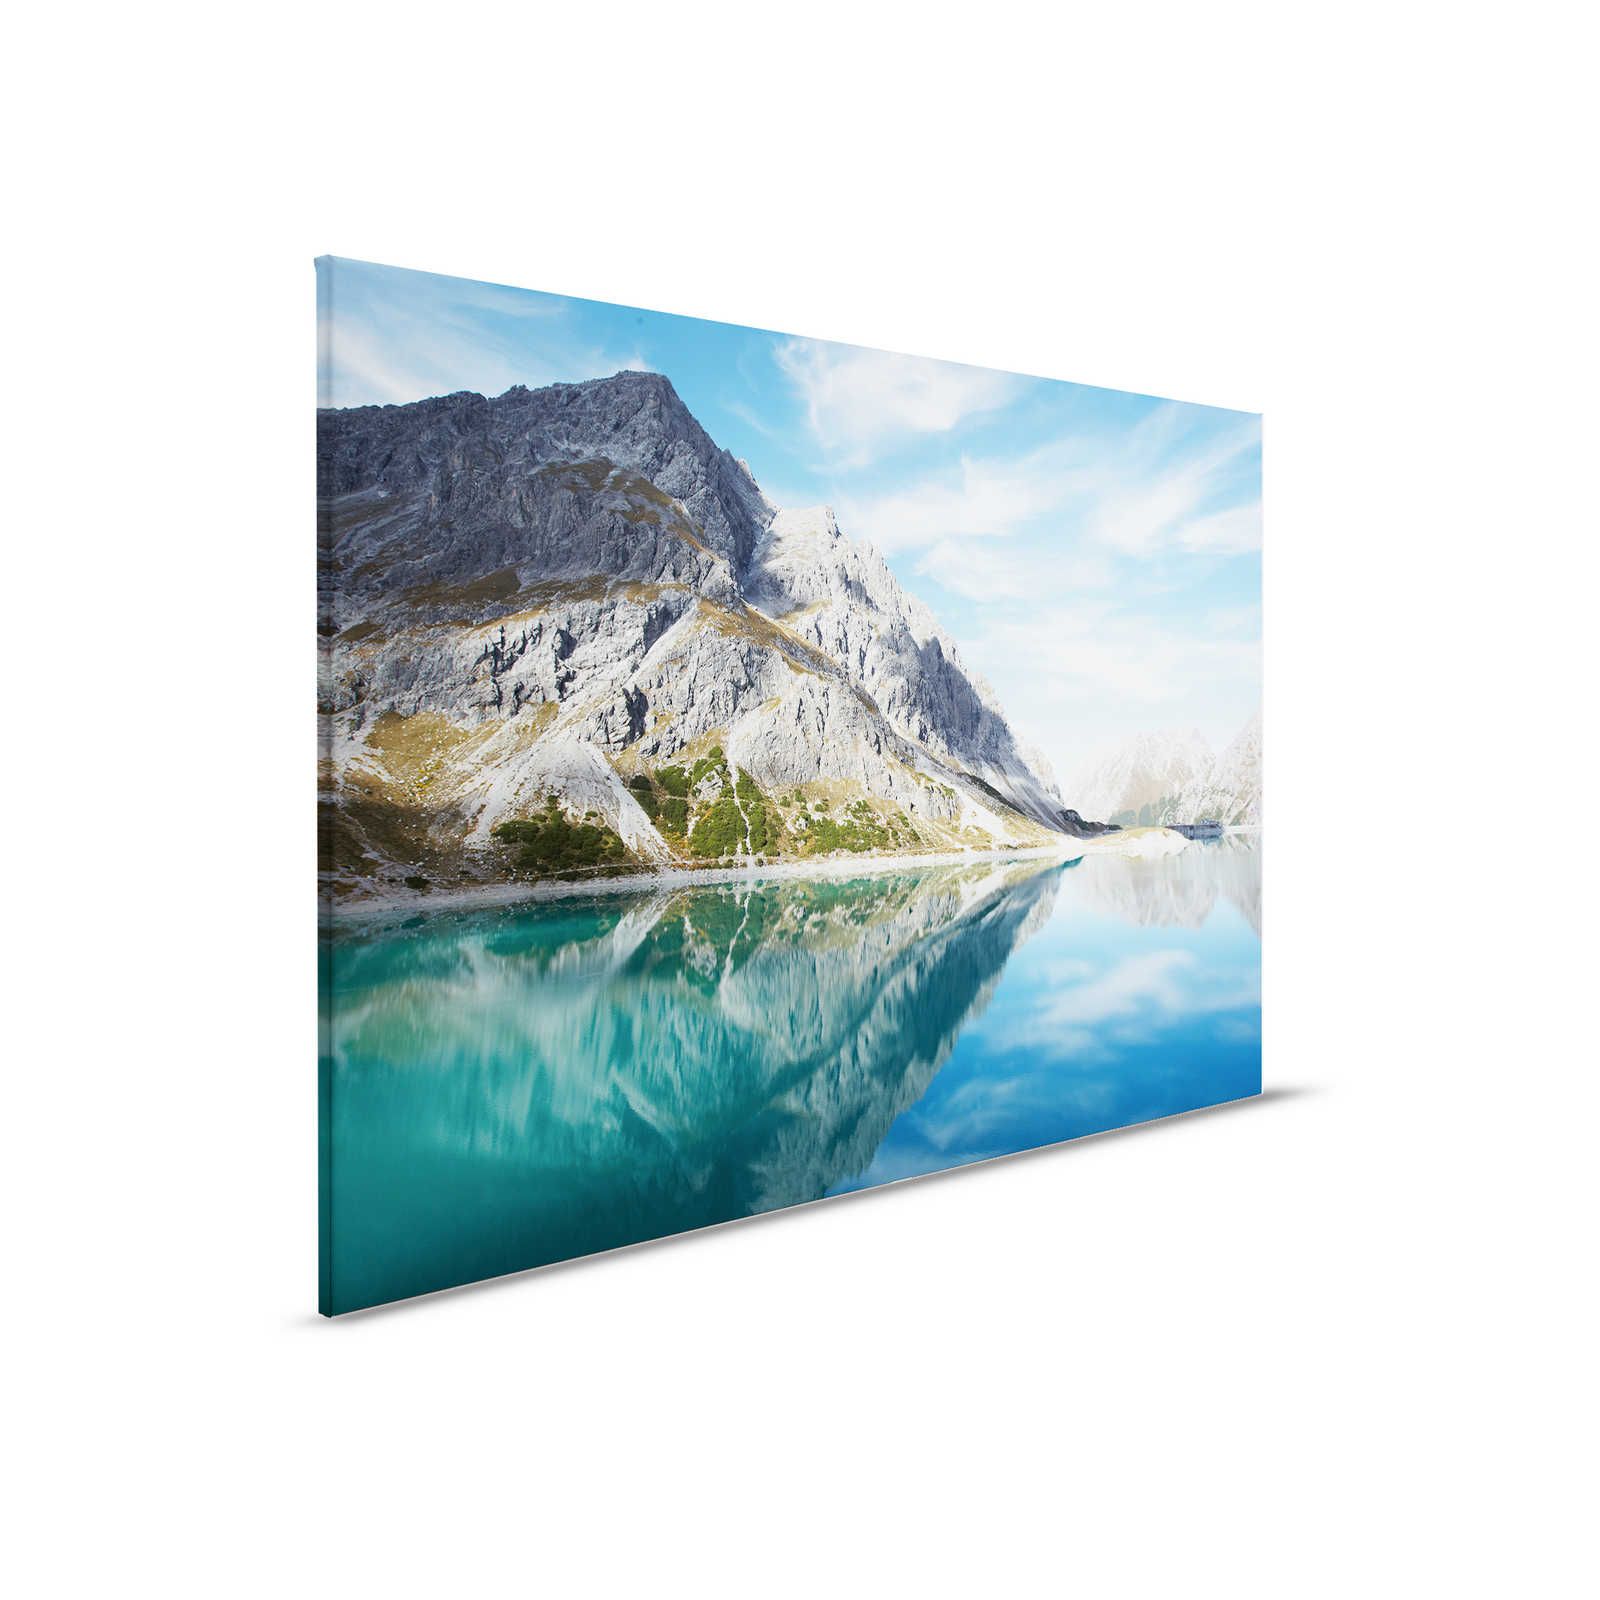 Lago de montaña claro - Cuadro en lienzo con panorama natural de montaña - 0,90 m x 0,60 m
